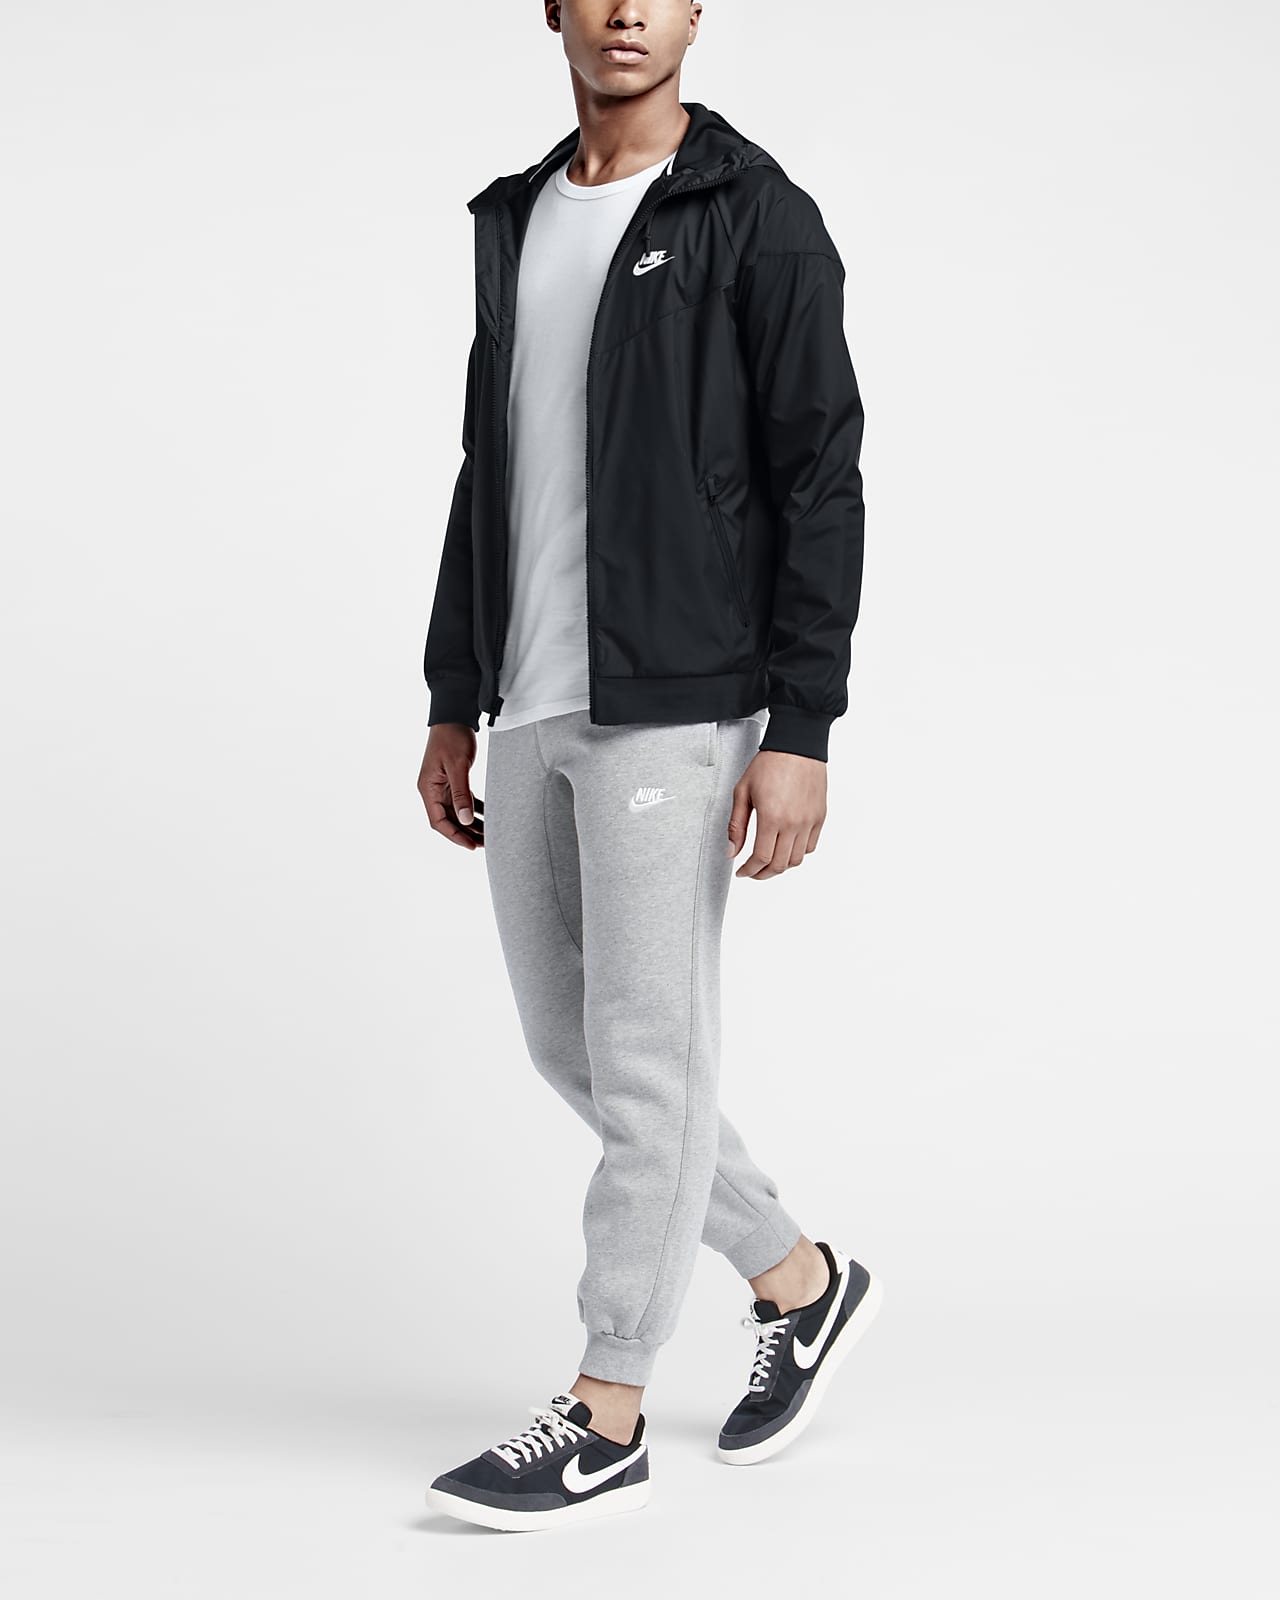 Men\'s Sportswear Nike Jacket. Windrunner